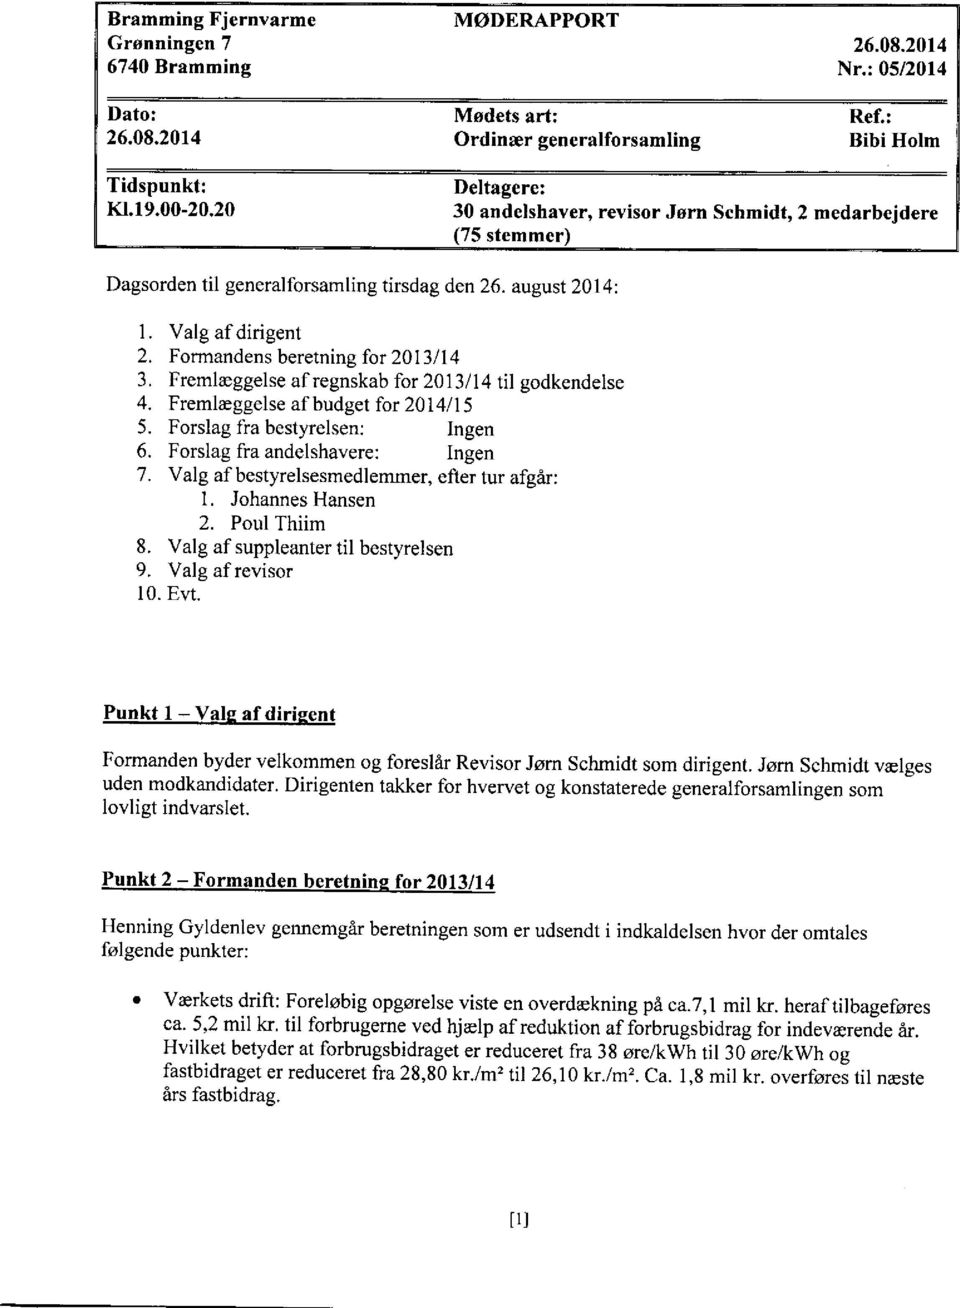 Formandens beretning for 2013/14 3. Fremlaeggelse afregnskab for 2013/14 til godkendelse 4. Fremleggelse af budget for 2014/15 5. Forslag f'ra bestyrelsen: Ingen 6. Forslag fra andelshavere: Ingen 7.